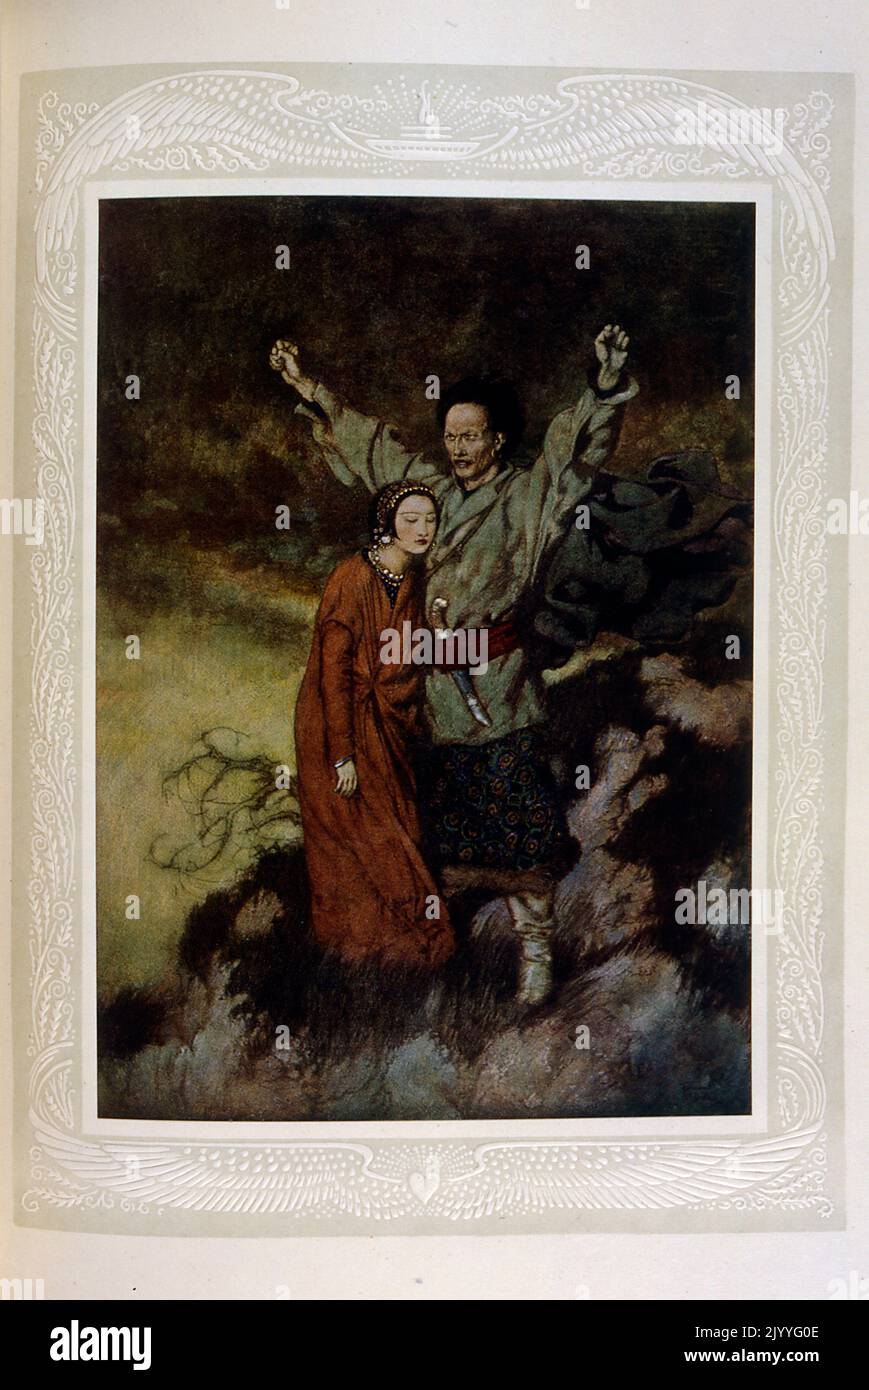 Illustration colorée d'un couple oriental contre un paysage montagneux accidenté. Illustré par Edmund Dulac (1882-1953), un magazine naturalisé français britannique et illustrateur de livres. Banque D'Images